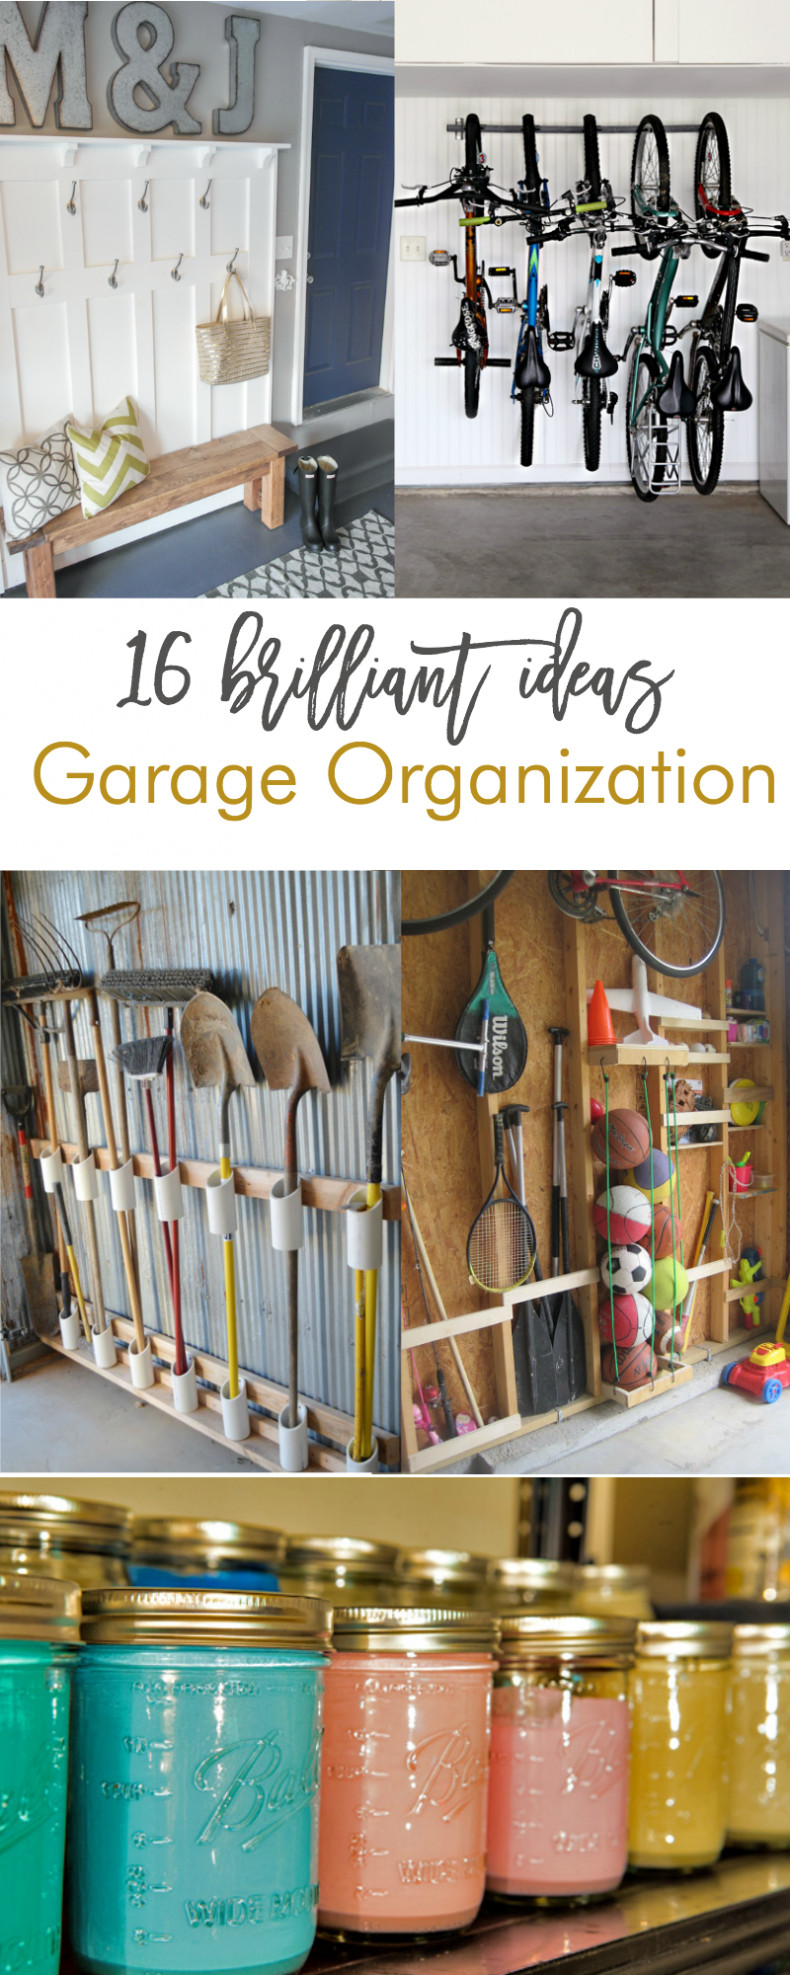 Best ideas about Garage Organization Ideas DIY
. Save or Pin 16 Brilliant DIY Garage Organization Ideas Now.